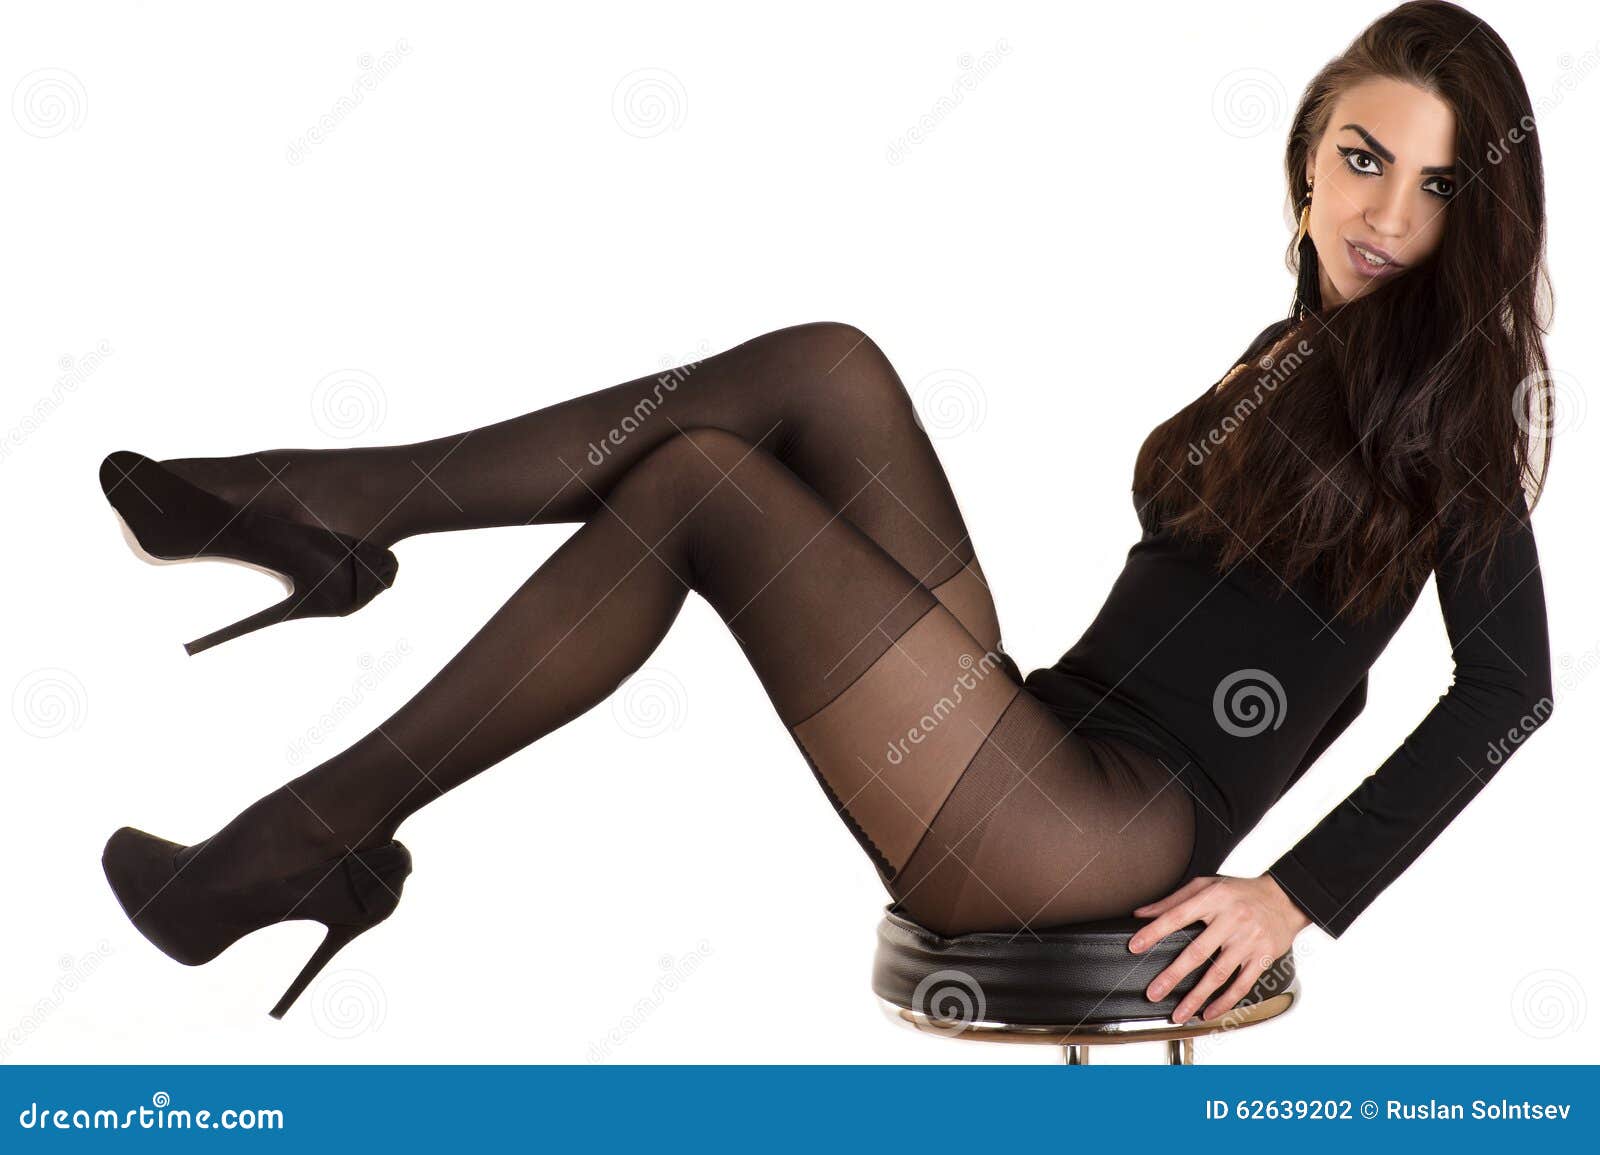 Women In Stockings